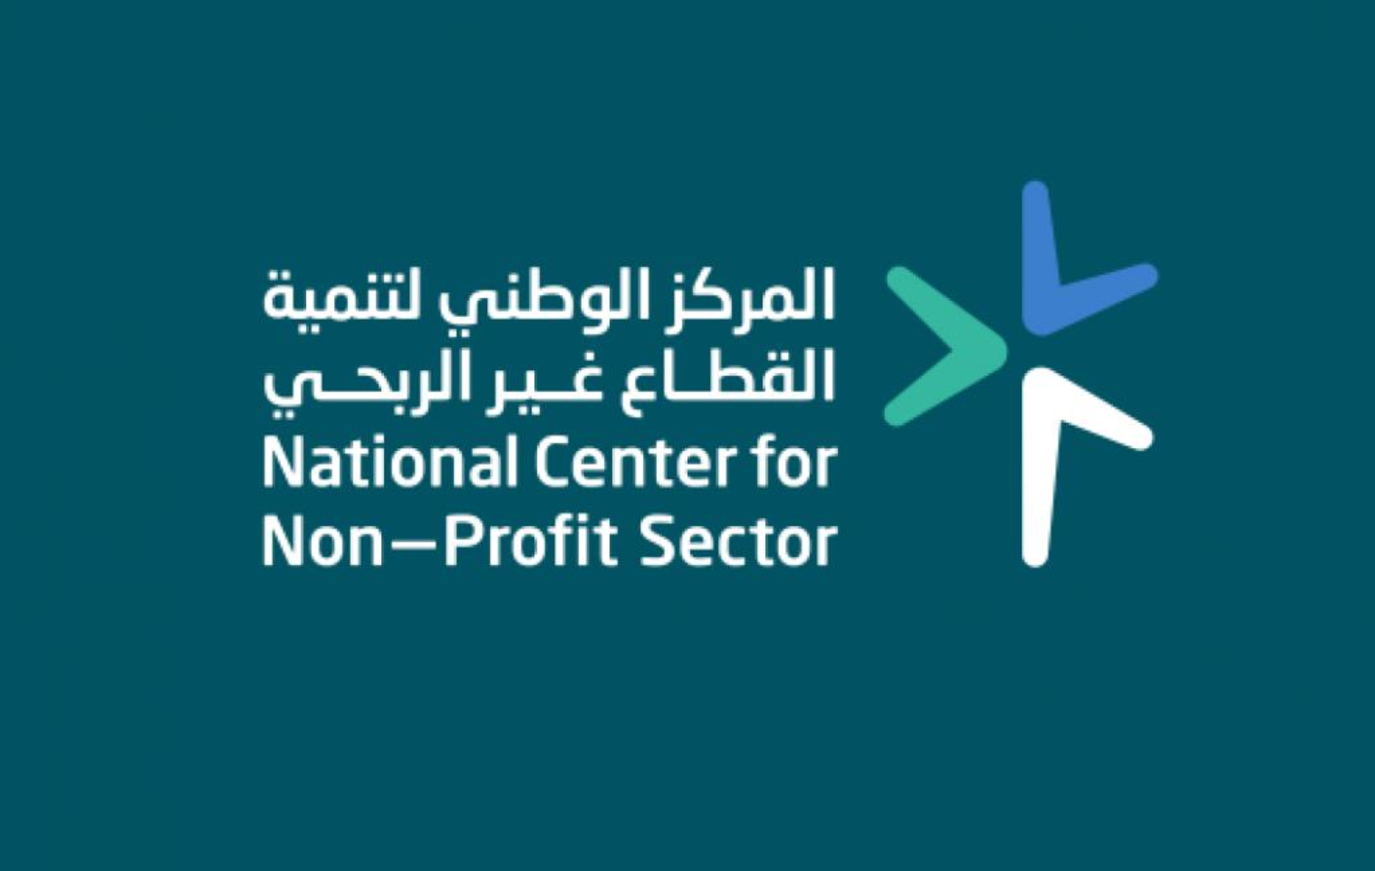 المركز الوطني لتنمية القطاع غير الربحي